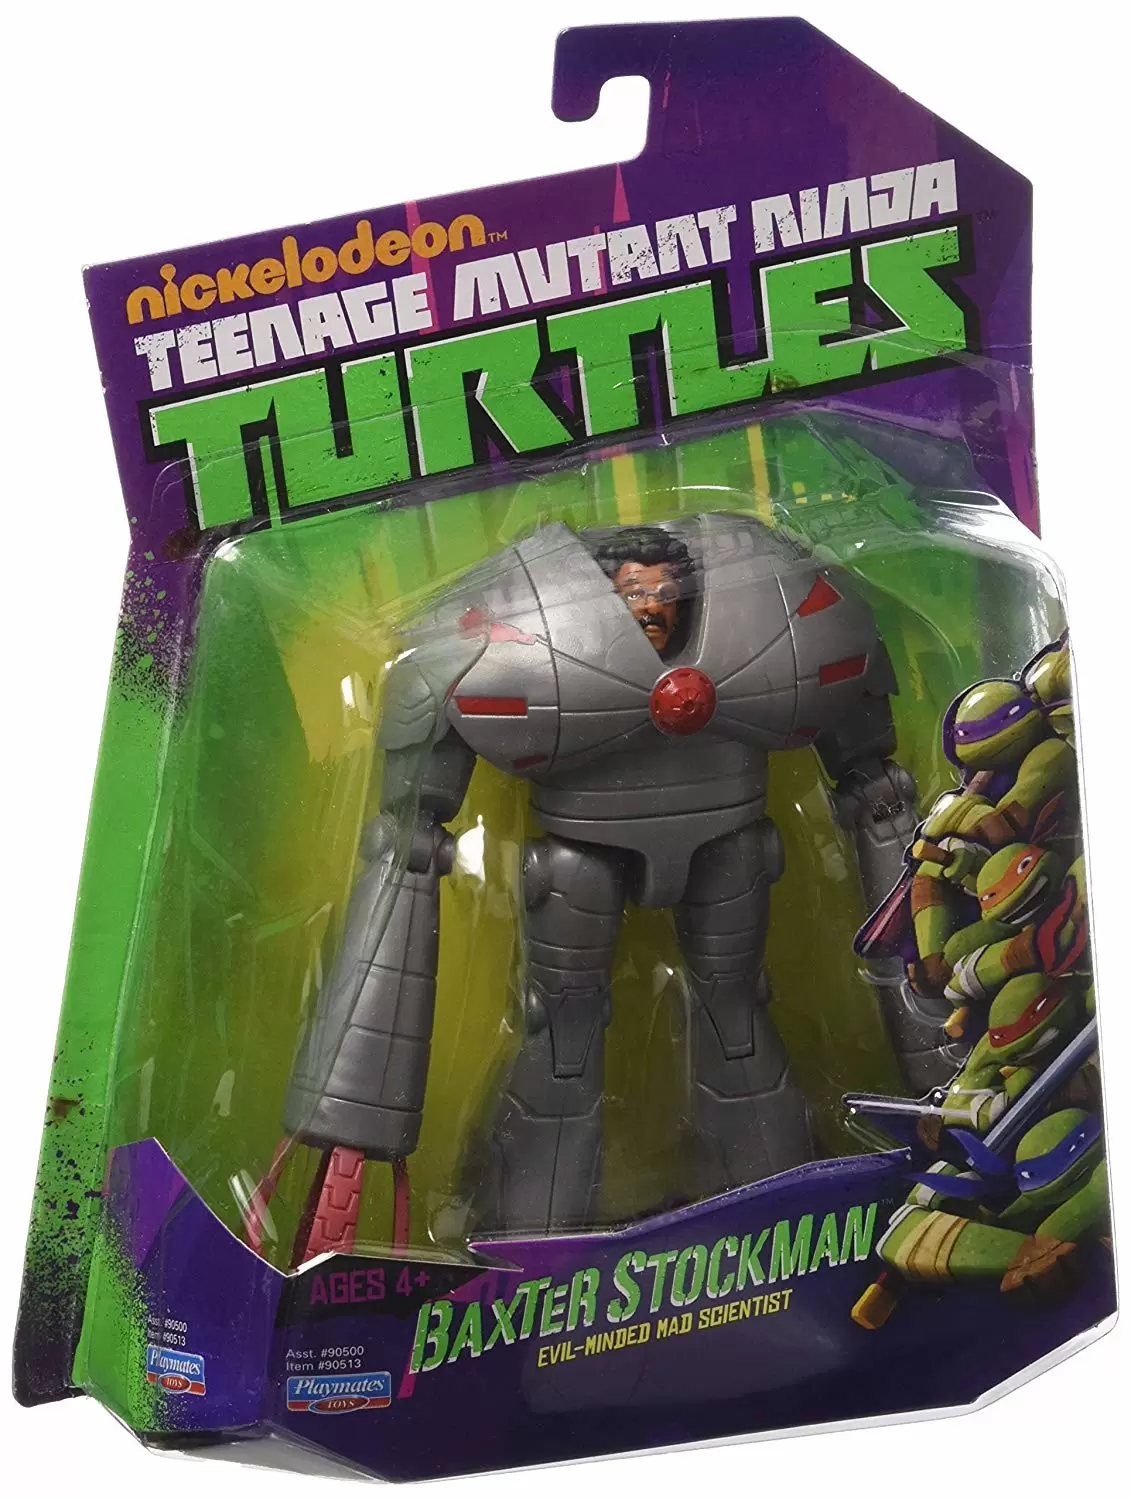 Teenage Mutant Ninja Turtles - Baxter Stockman